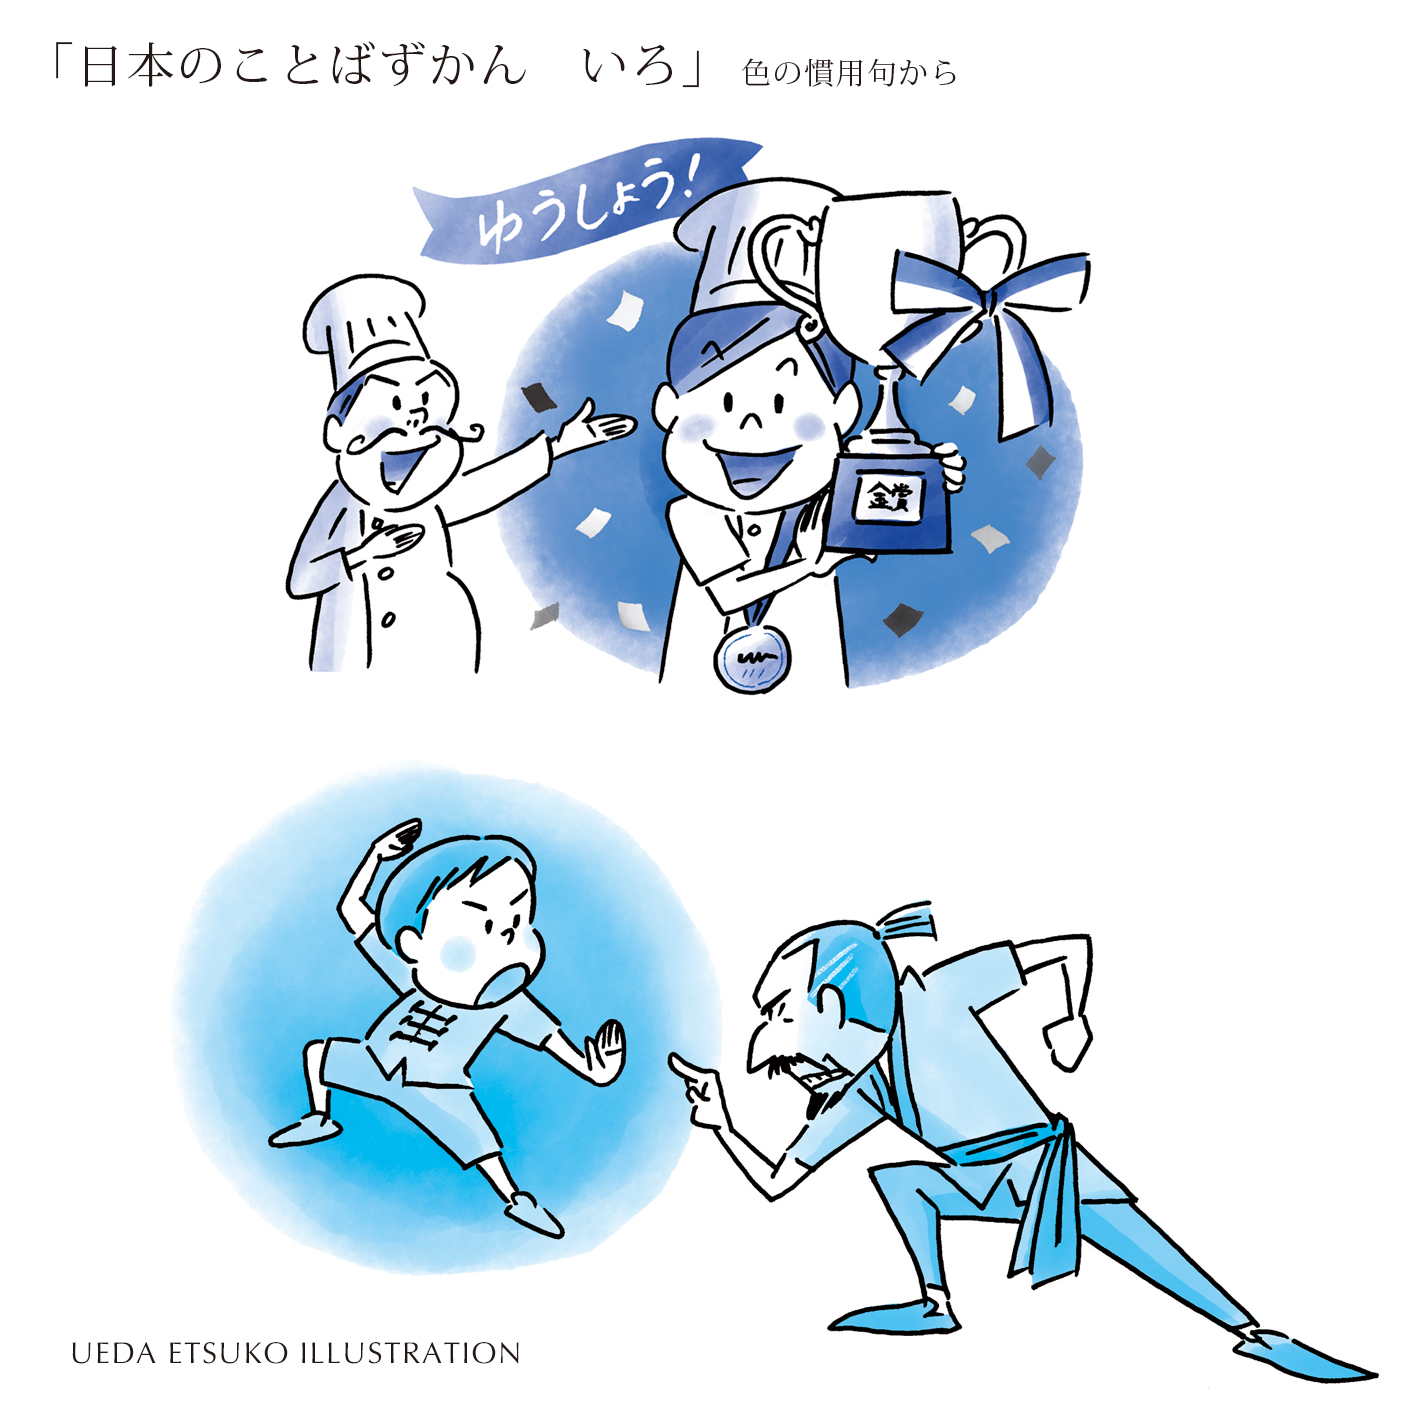 上田 英津子 Illustrator 日本のことばずかん いろ 講談社 色の慣用句 から 色から思いおこされるイメージにもとづいた 慣用句や言い回しです どんな分かるかな ヒント 黄色 赤 藍 青 言葉 イラストレーション イラスト 慣用句 T